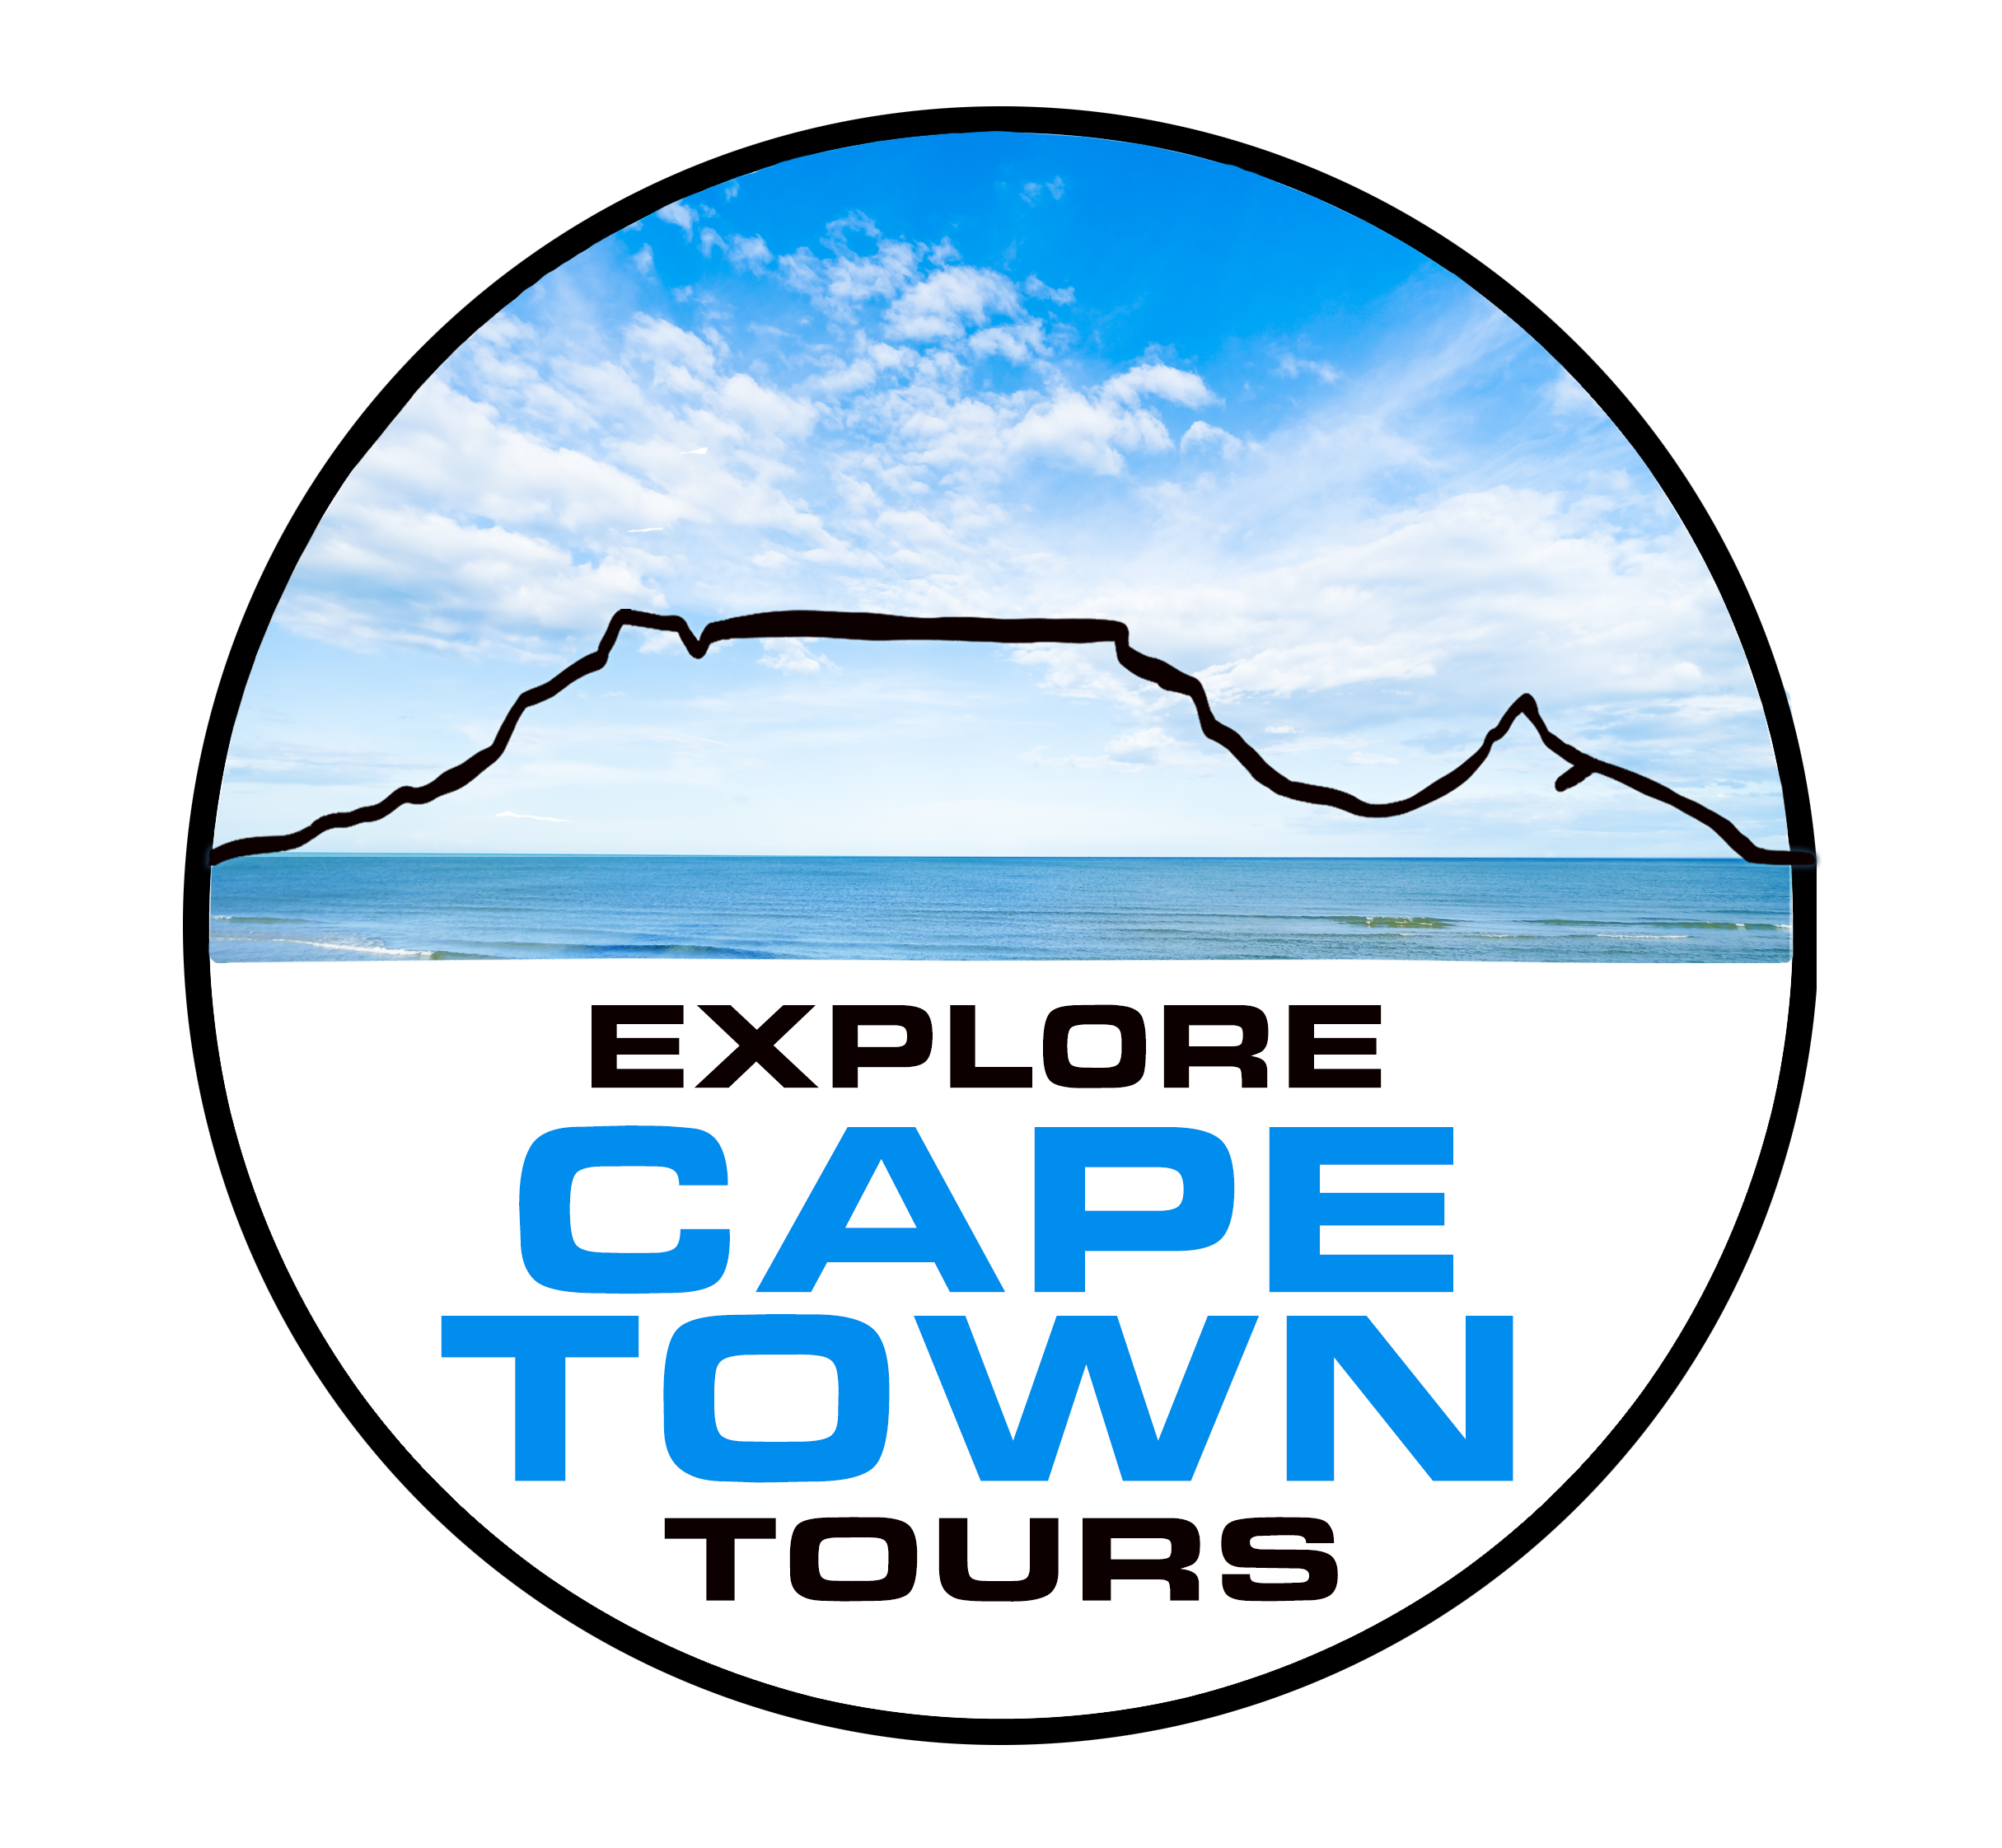 xplore cape town tours